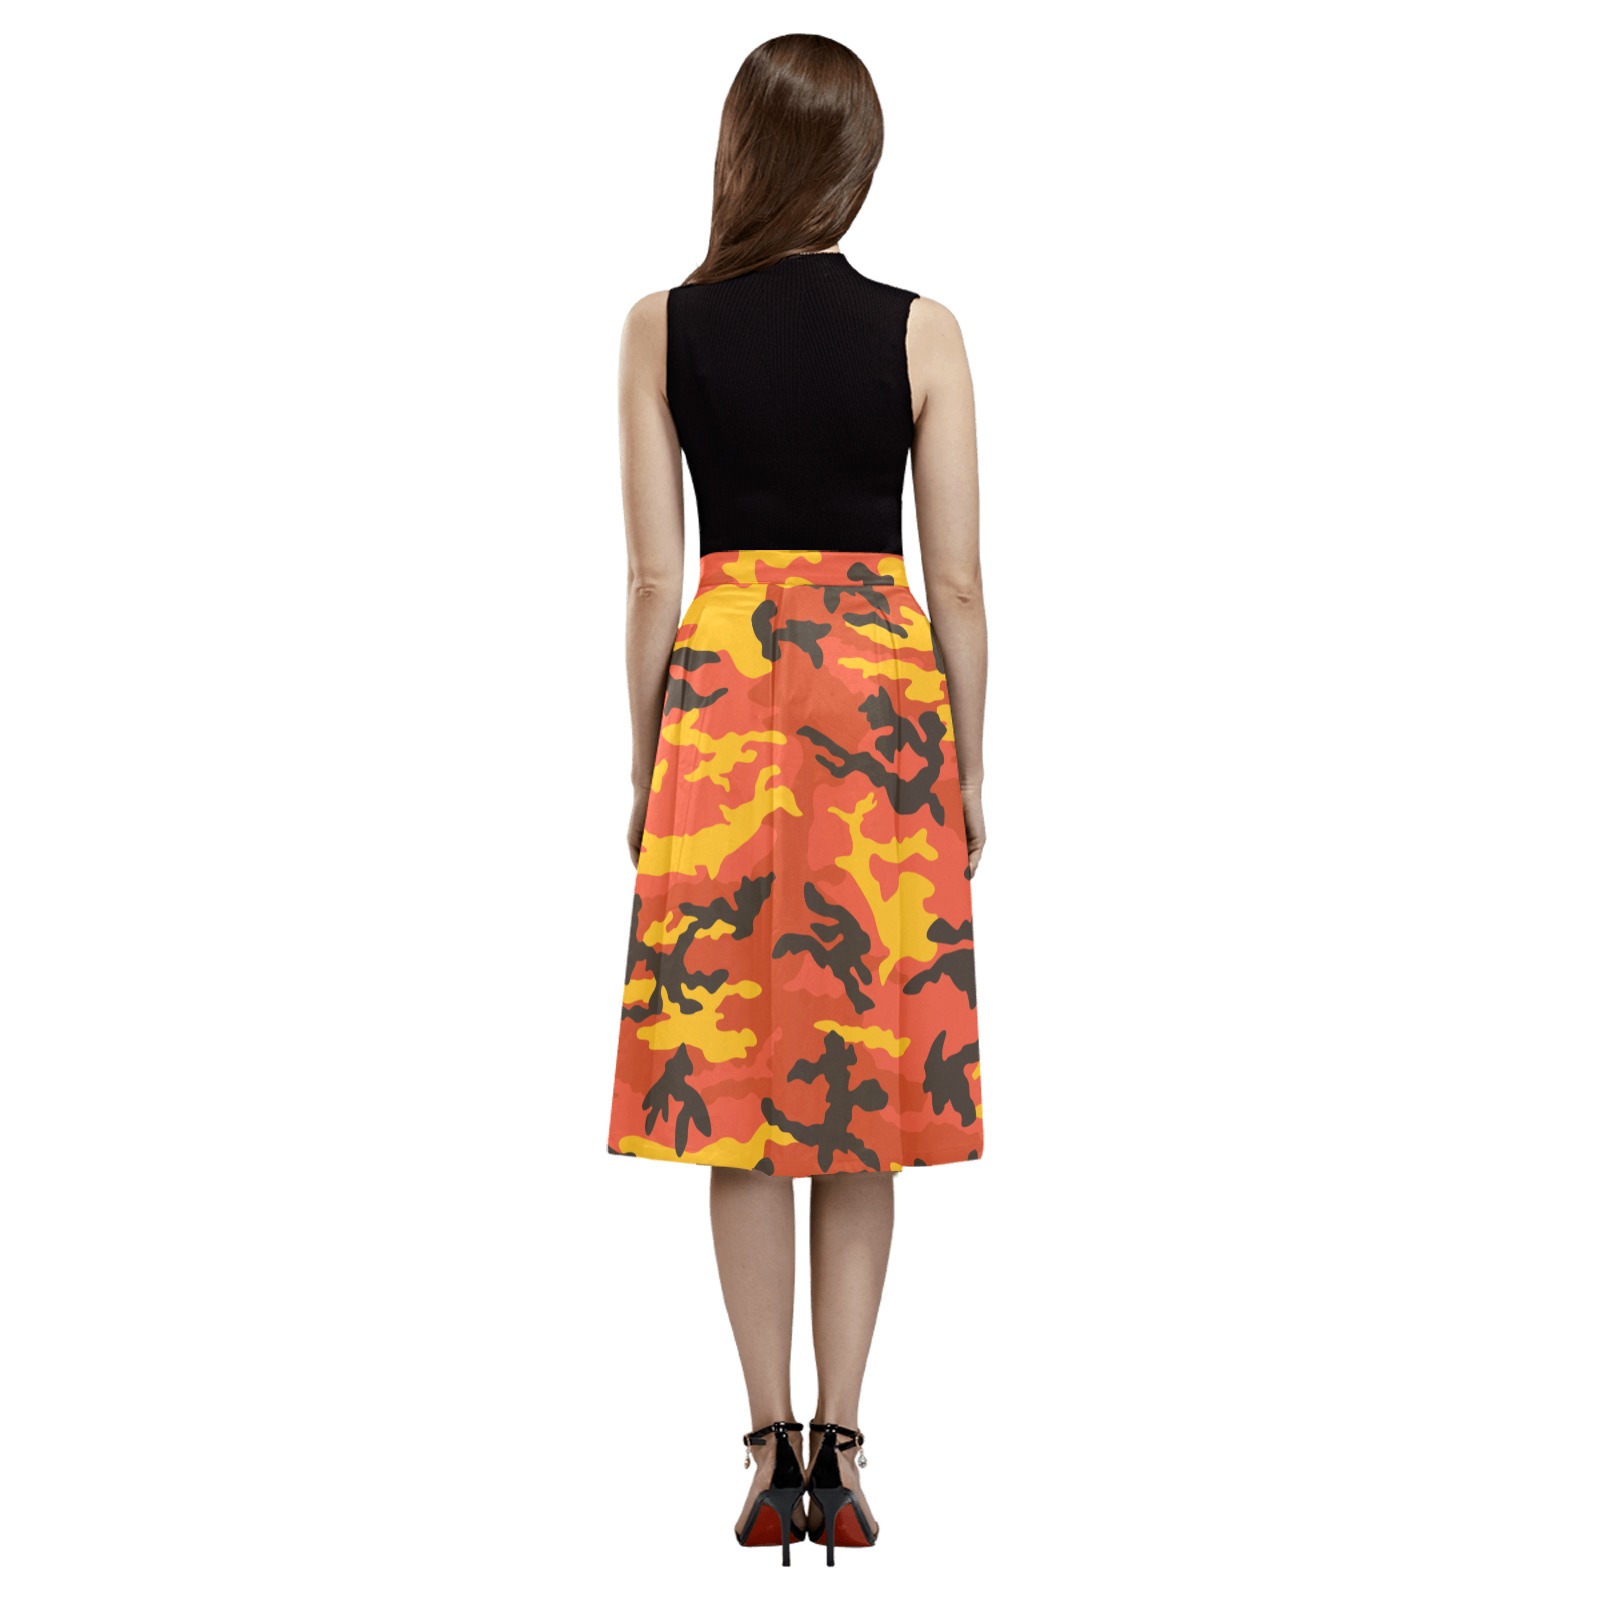 Forest-fire-ERDL Mnemosyne Women's Crepe Skirt (Model D16)